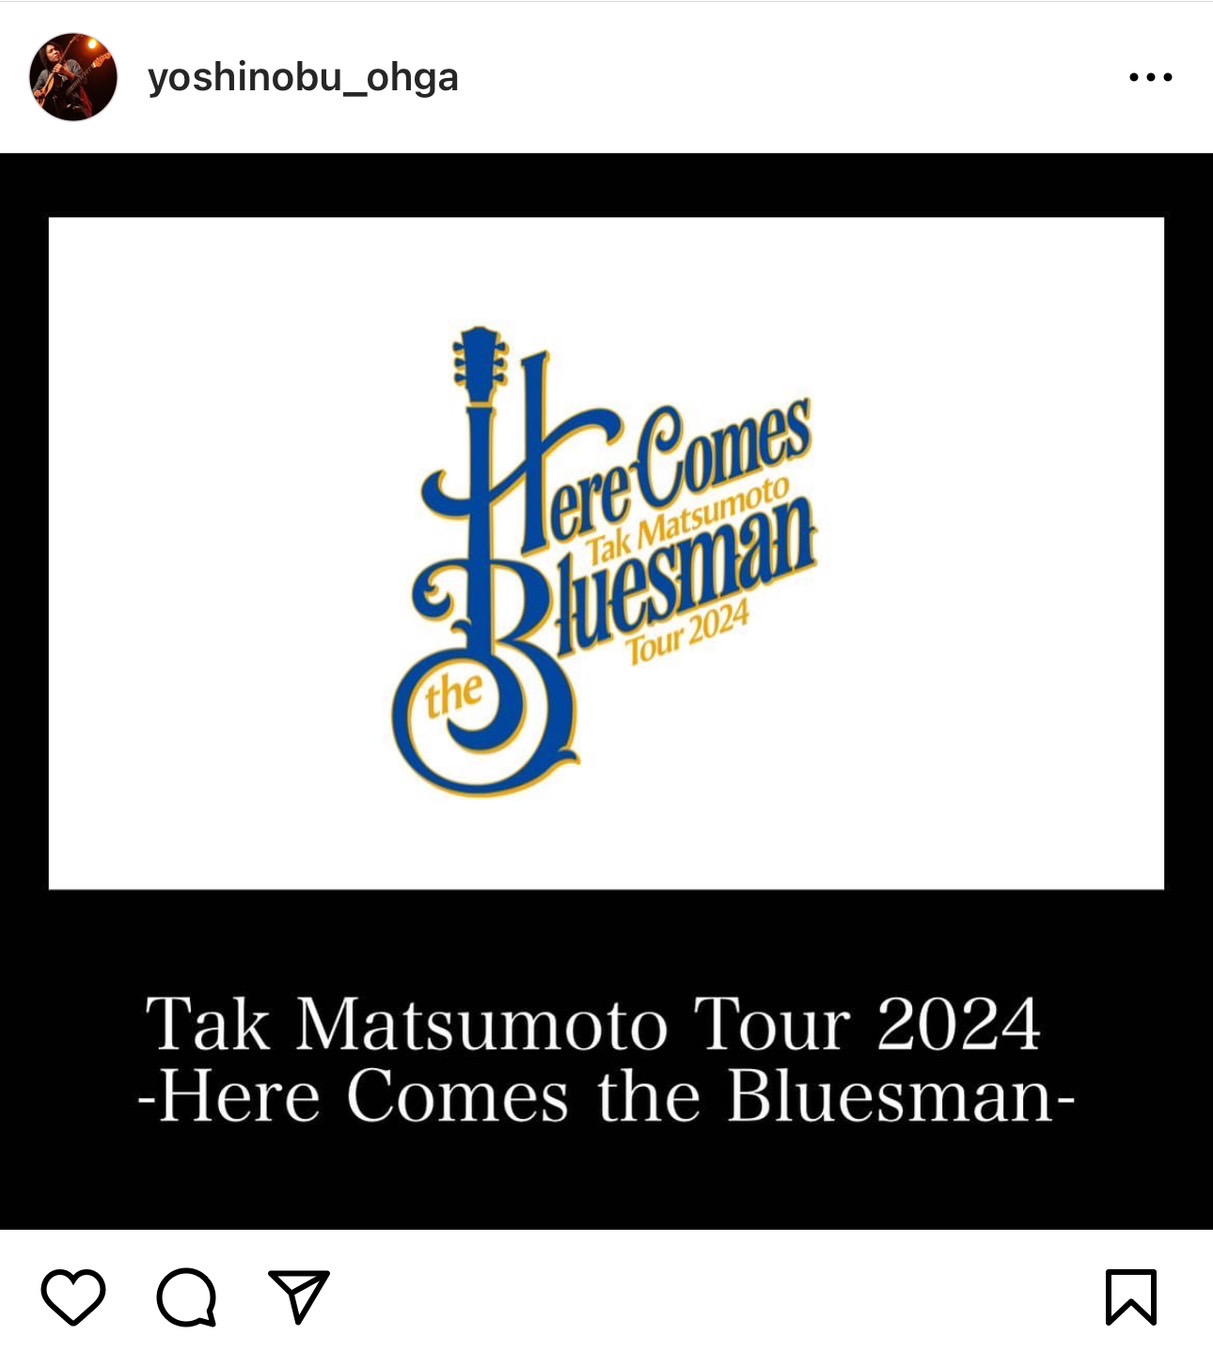 大賀好修が『Tak Matsumoto Tour 2024 -Here Comes the Bluesman-』に参加することを告知したInstagramの投稿